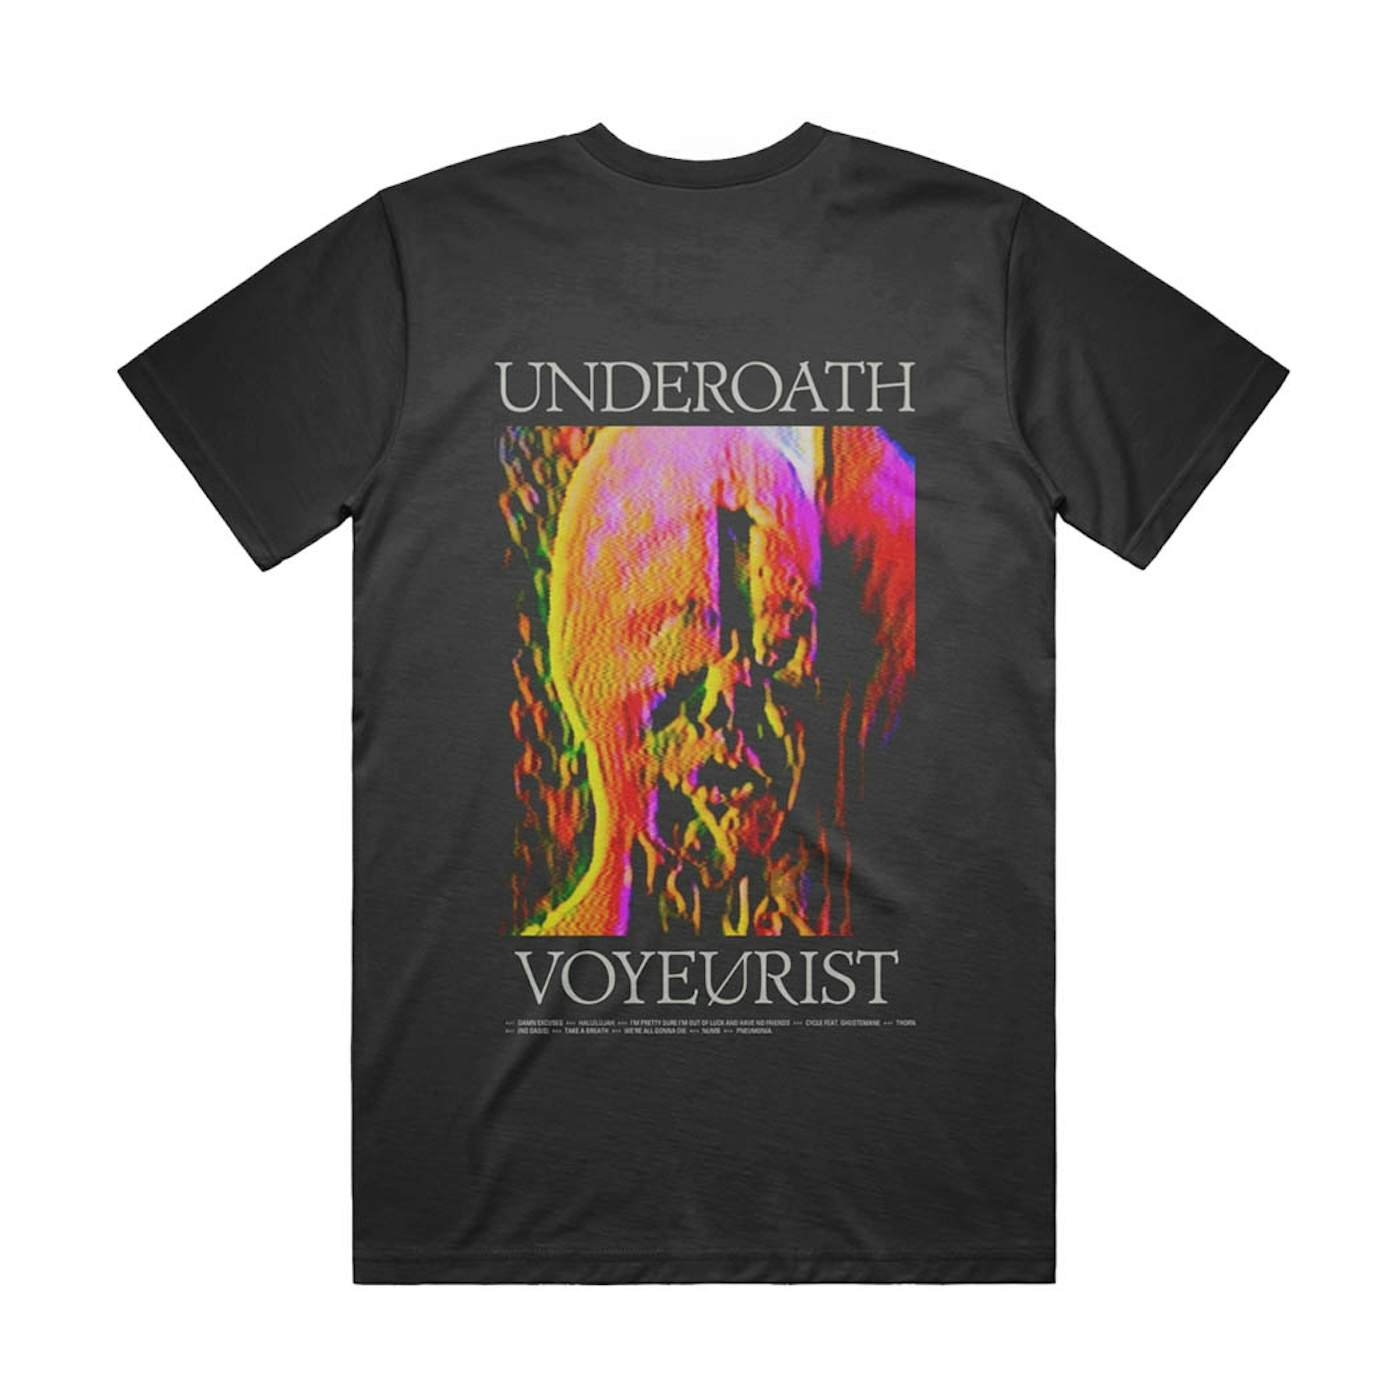 Underoath Voyeurist Melted Face T-Shirt